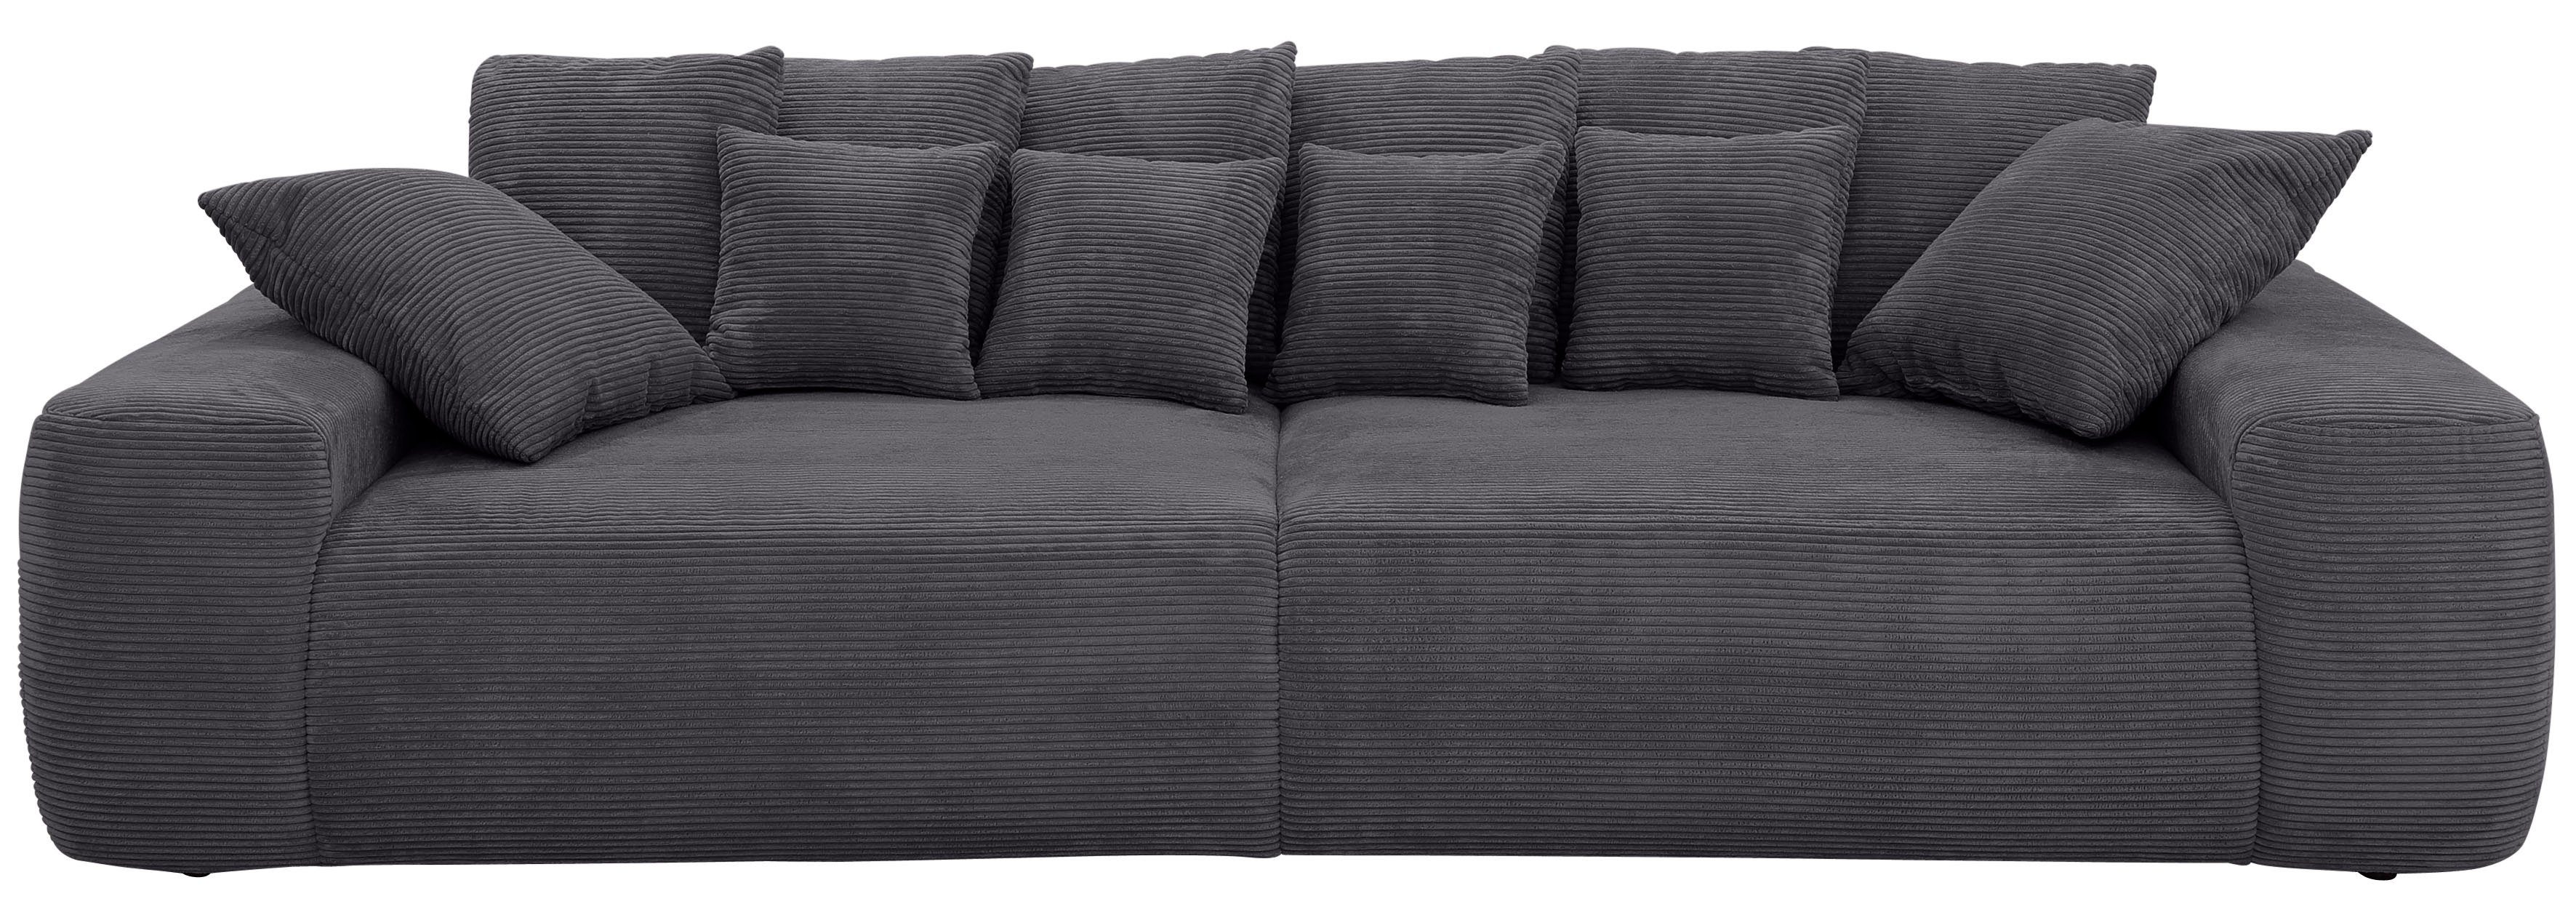 Home affaire Big-Sofa »Riveo Luxus«, mit besonders hochwertiger Polsterung  für bis zu 140 kg pro Sitzfläche, auch mit Cord-Bezug online kaufen | OTTO